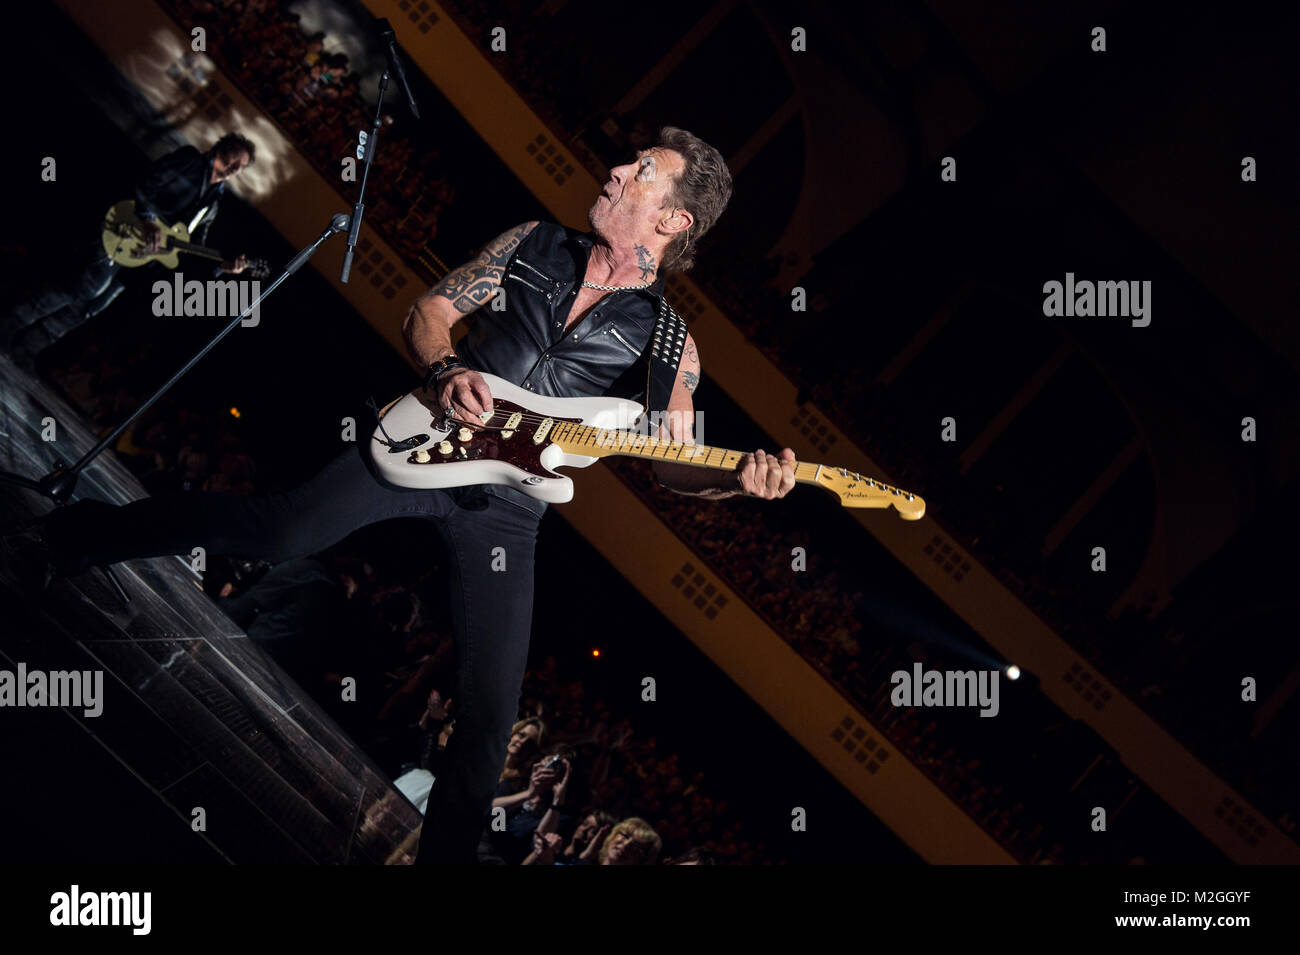 Der Pop- und Rock-Musiker Peter Maffay spielt am Dienstag (20.01.2015) das erste von zwei Konzerten im Rahmen seiner aktuellen Tournee in der Frankfurter Festhalle. +++ 3S PHOTO / Foto: Sven-Sebastian Sajak Stock Photo